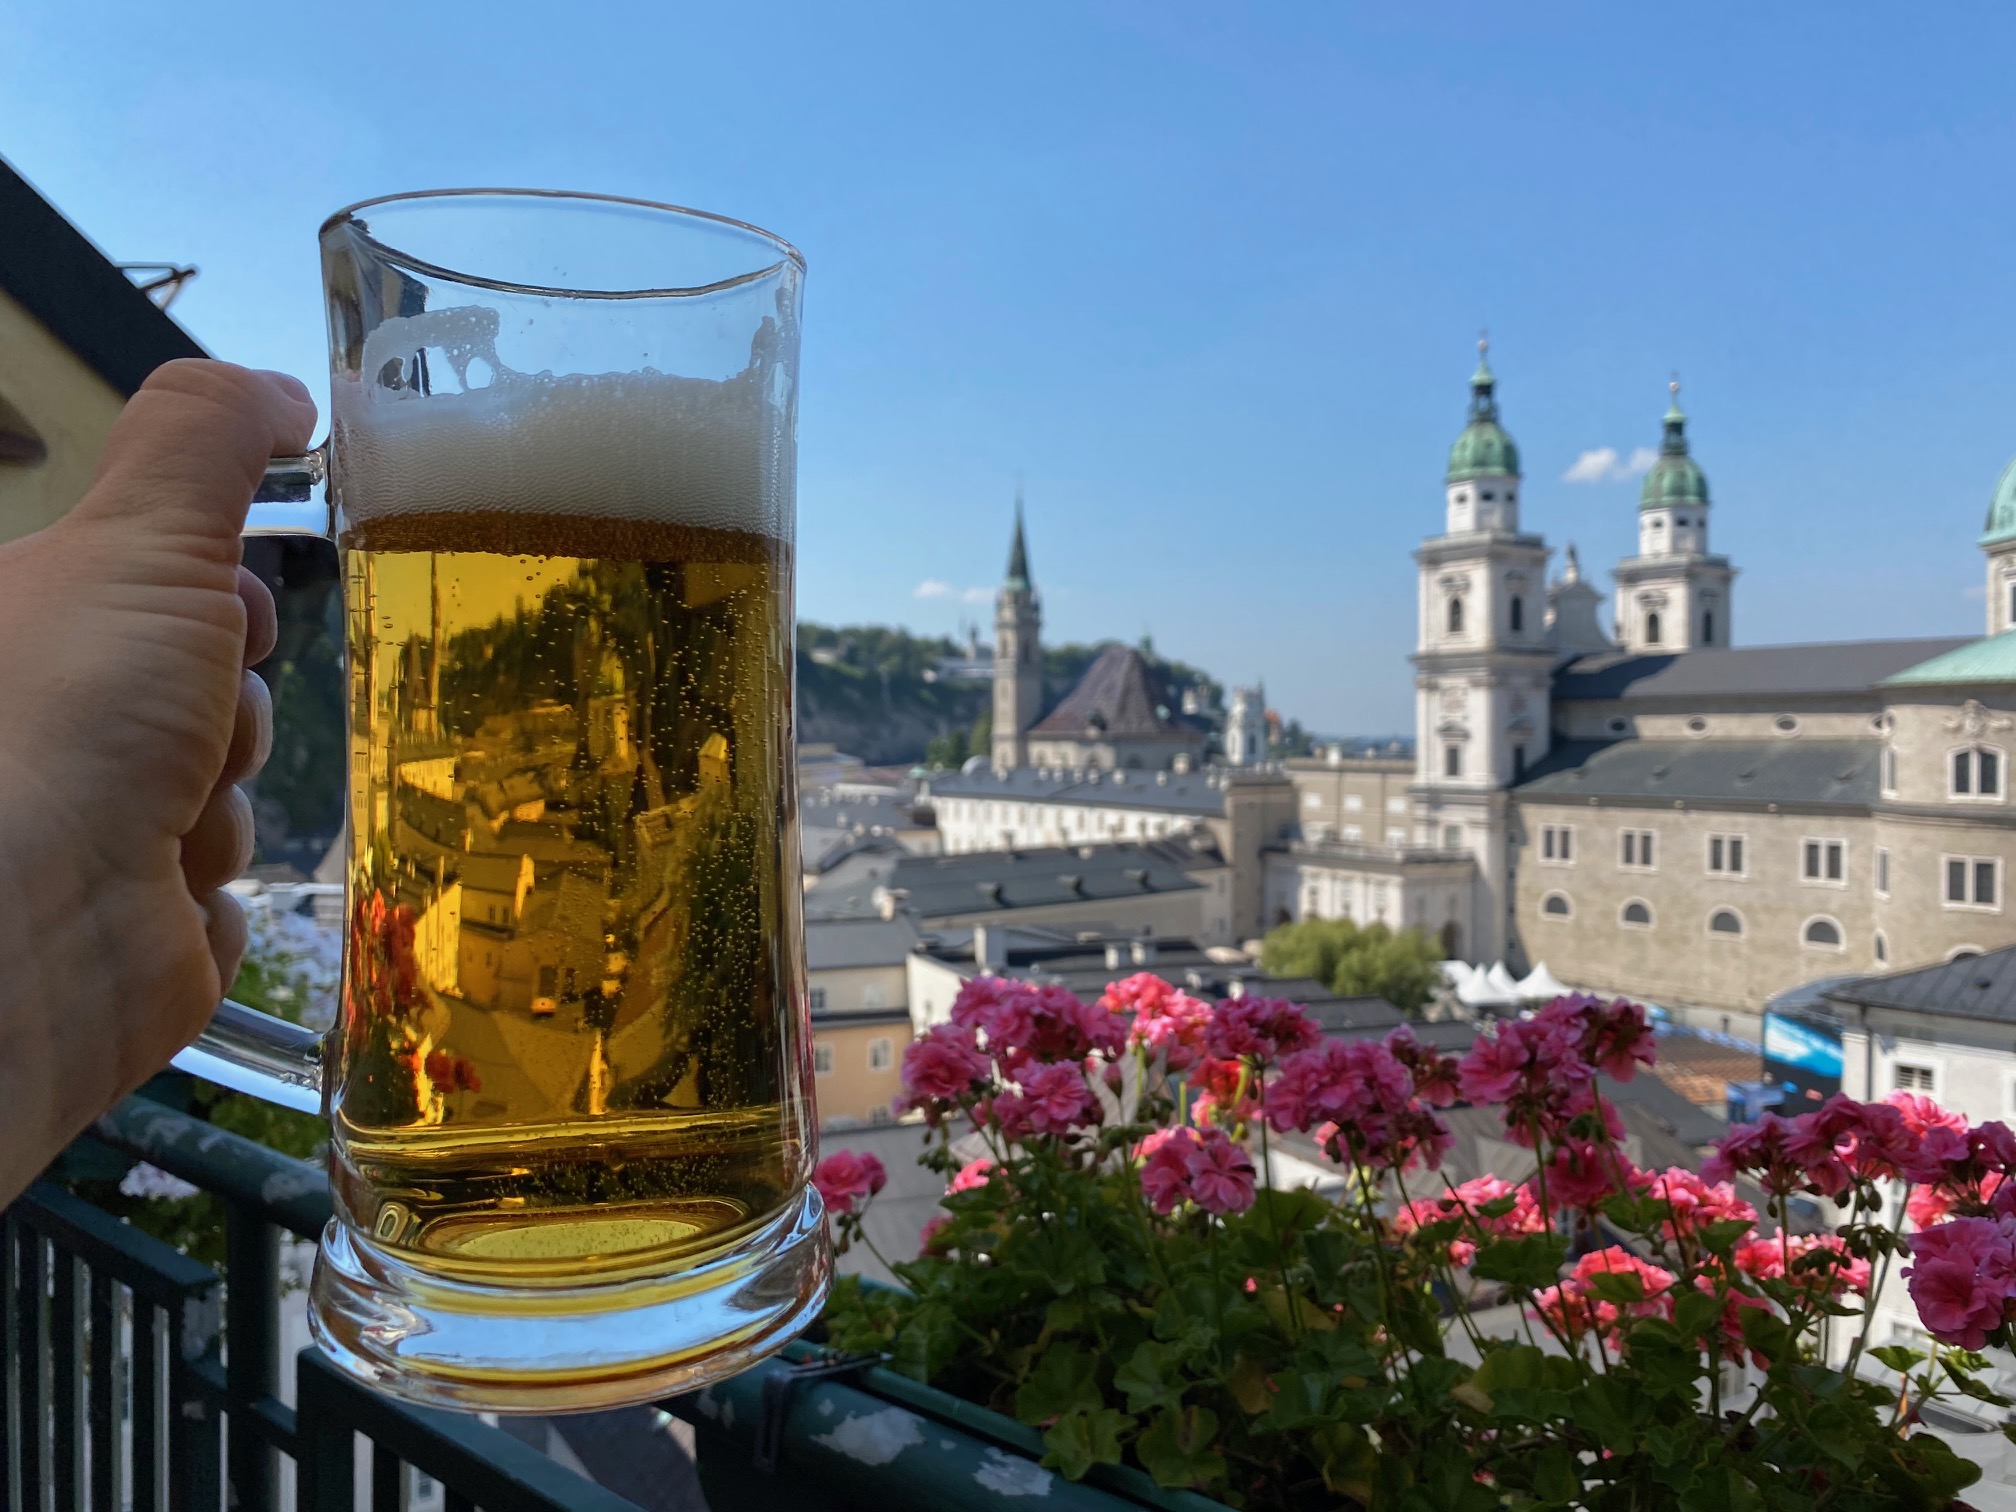 Erlebnisse rund ums Bier in Deutschland und Österreich